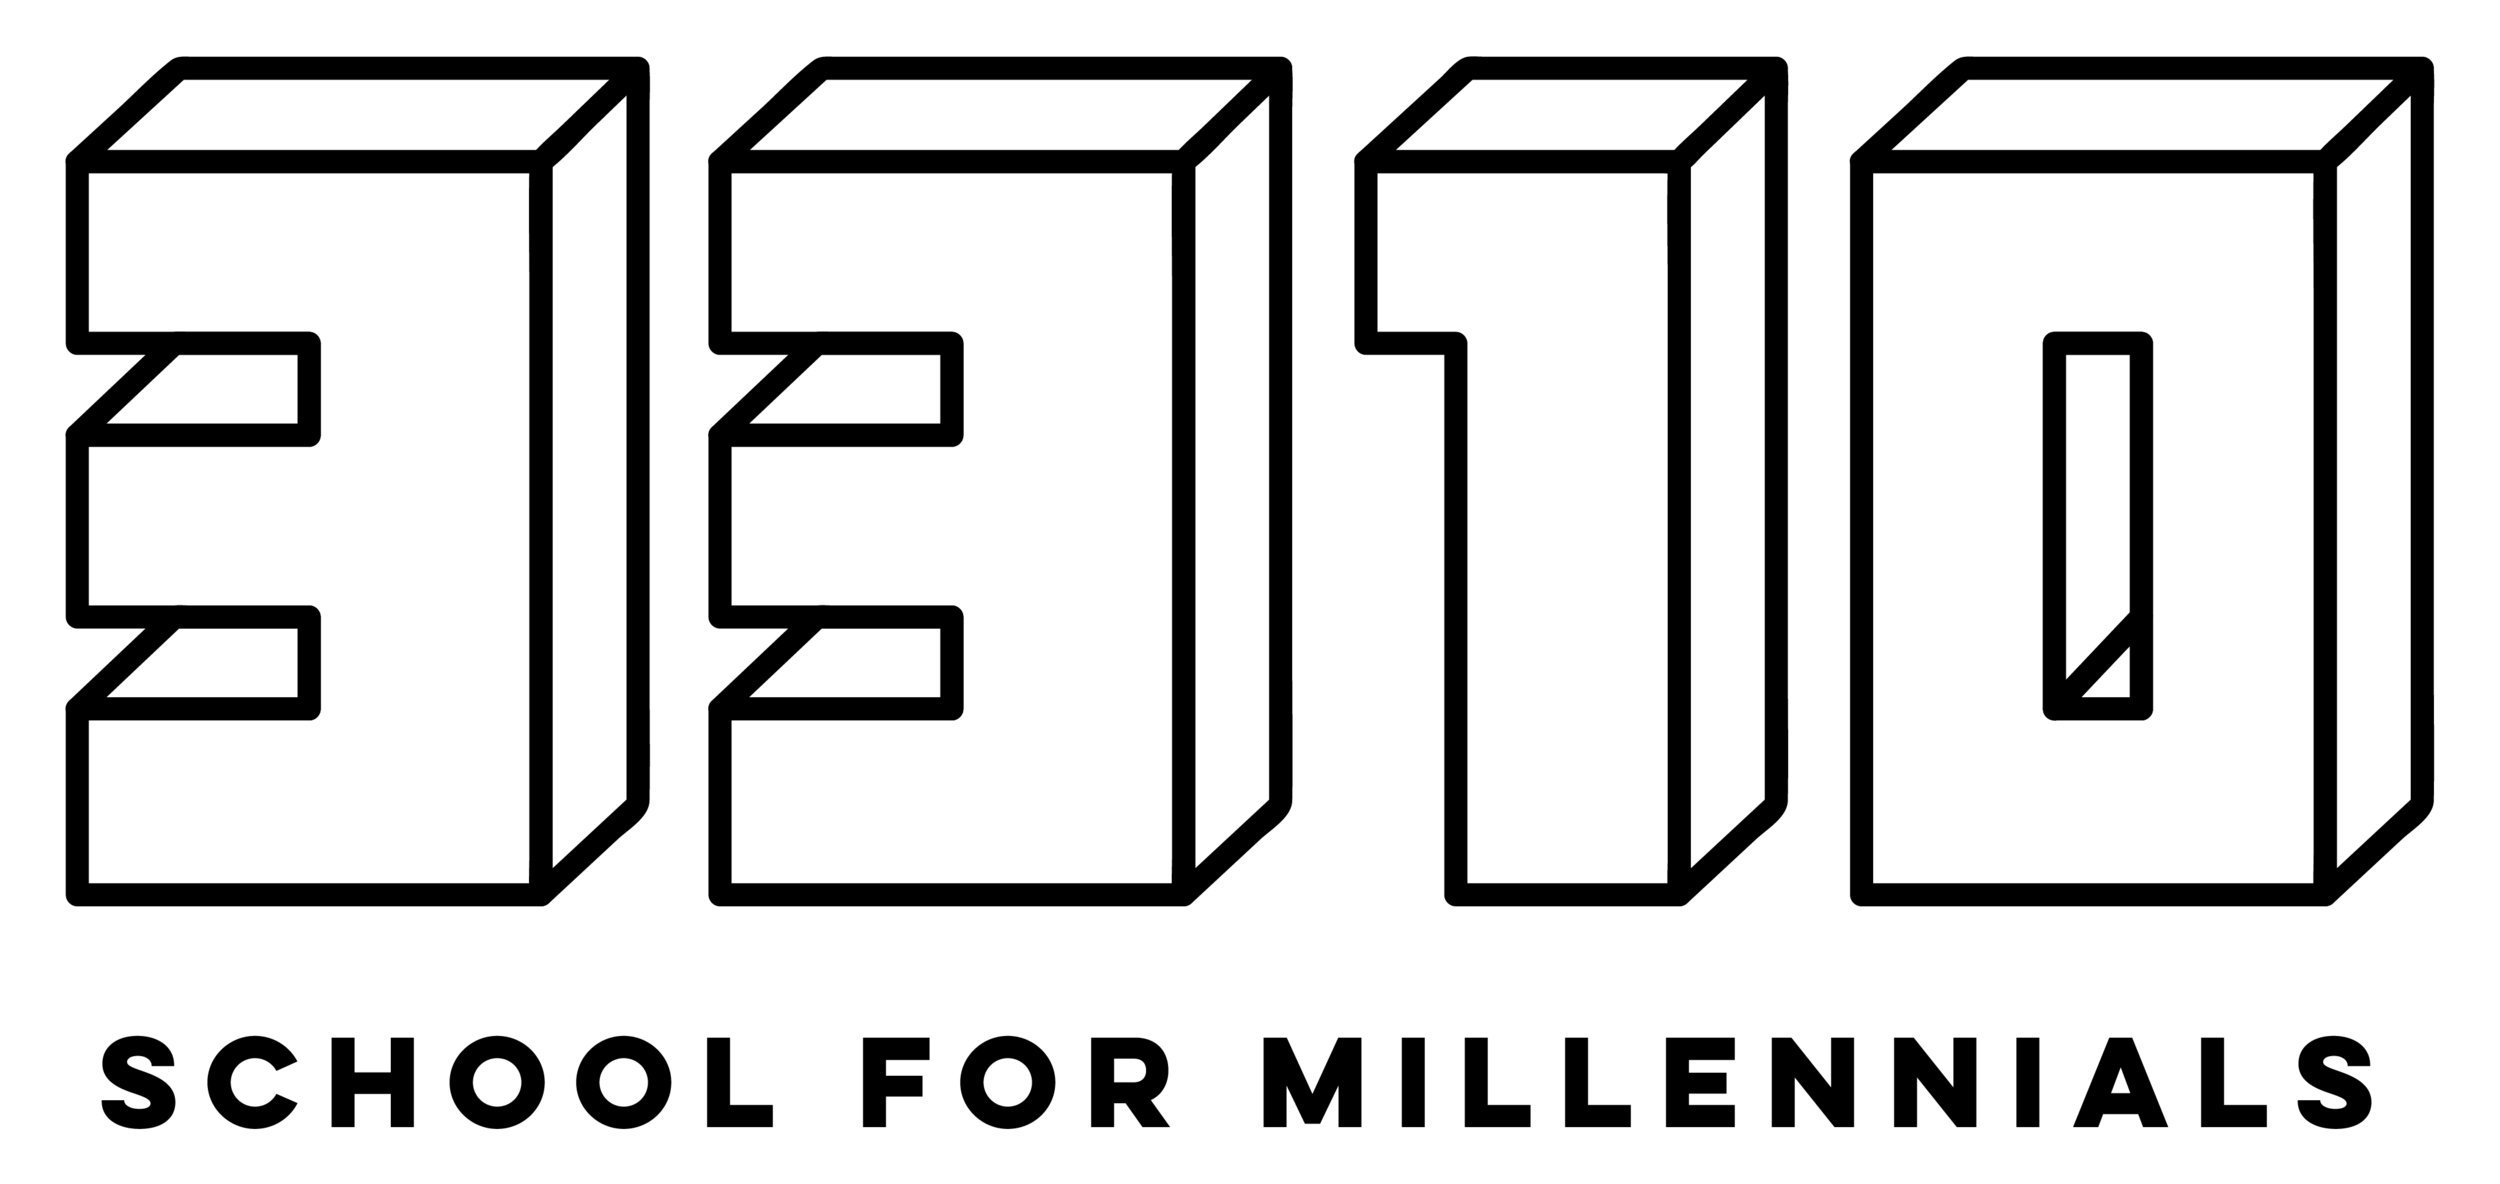 3310 School for Millennials